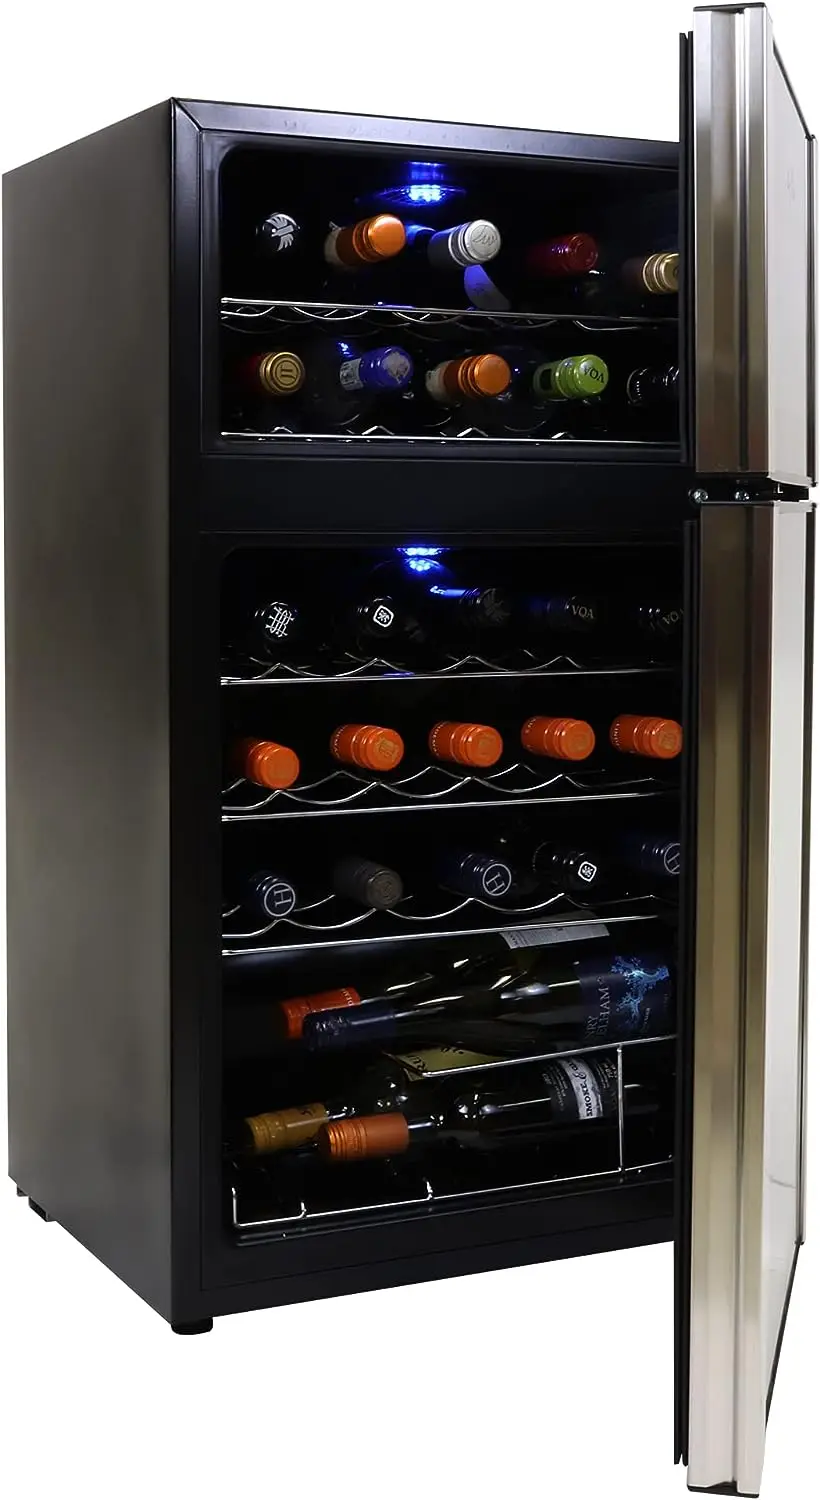 

Винный охладитель с двумя зонами, черный, 3 куб. Фута (86 л), винный холодильник с компрессором, отдельно стоящий винный погреб, красный, белый, для хранения игристого вина